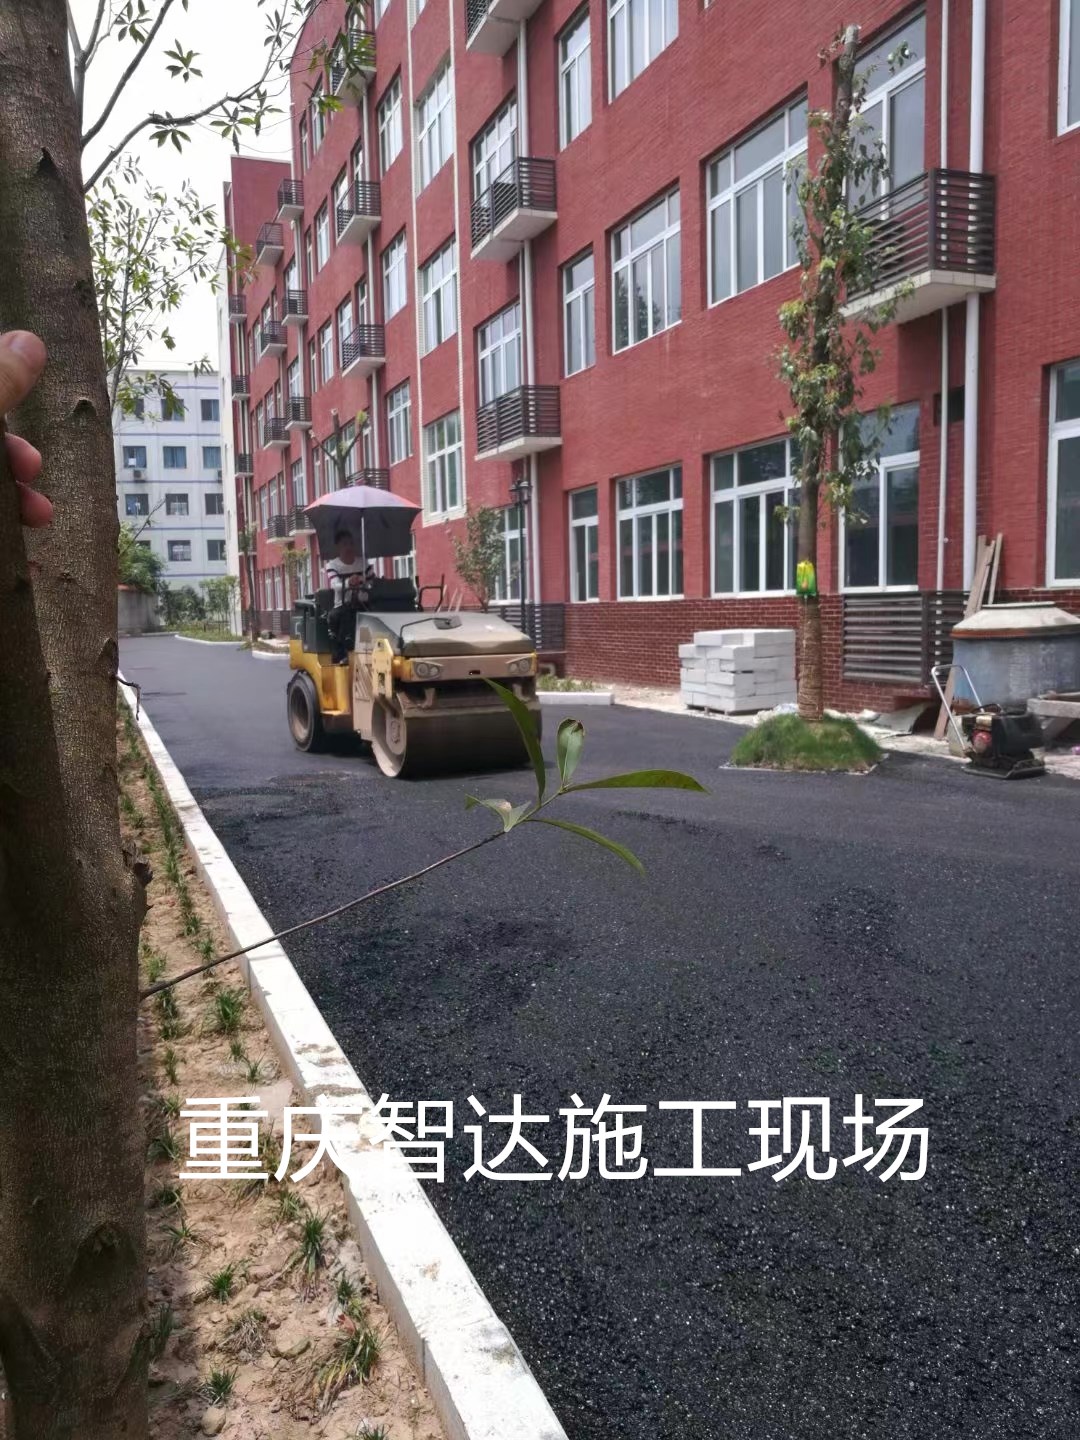 重庆沥青混凝土路面材料批发 重庆道路沥青专业铺装单位 重庆沥青冷补材料